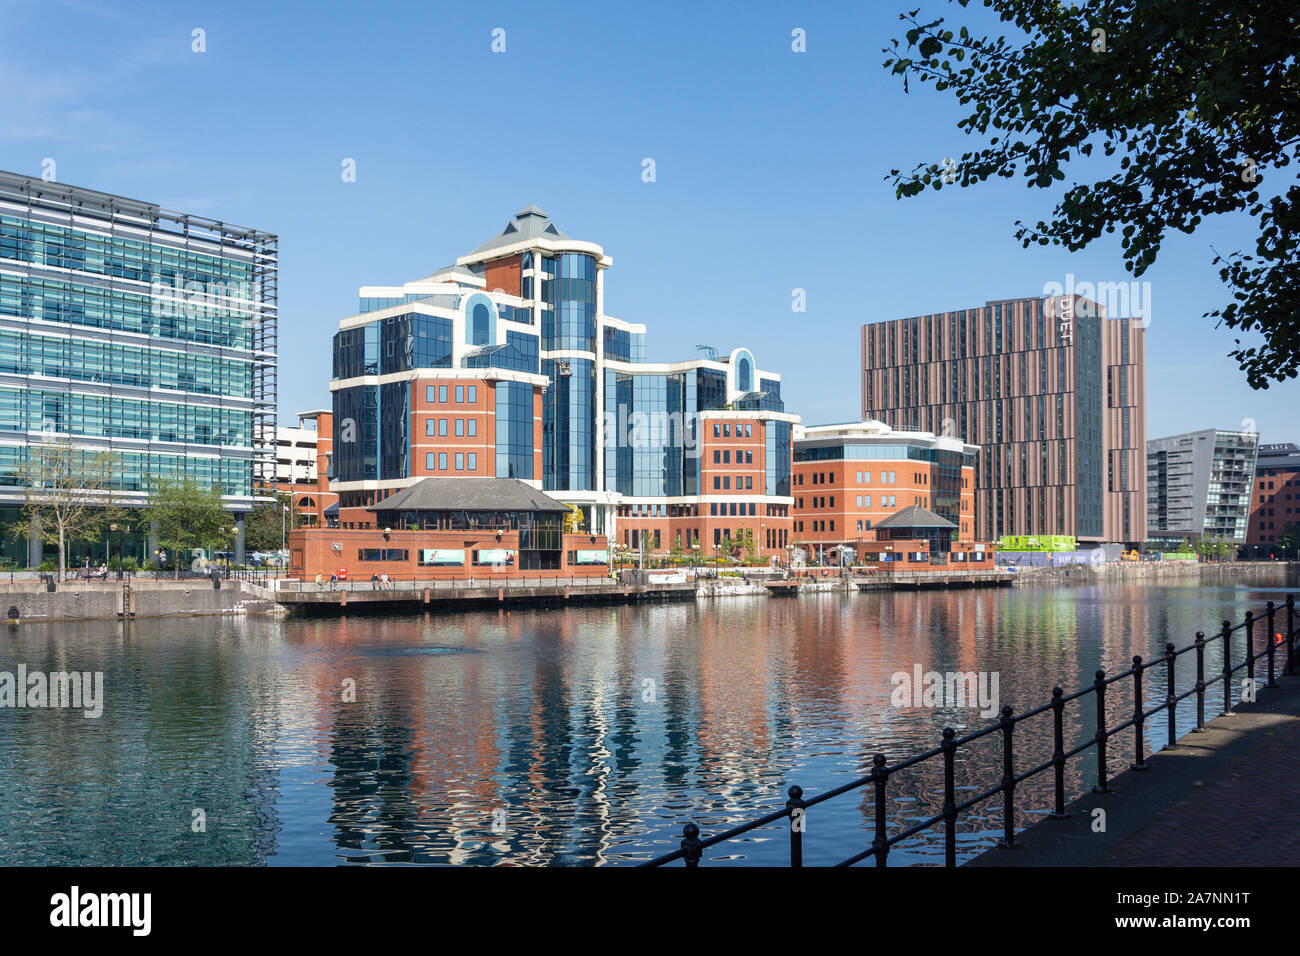 El edificio Victoria, Salford Quays, Salford, Greater Manchester, Inglaterra, Reino Unido Foto de stock